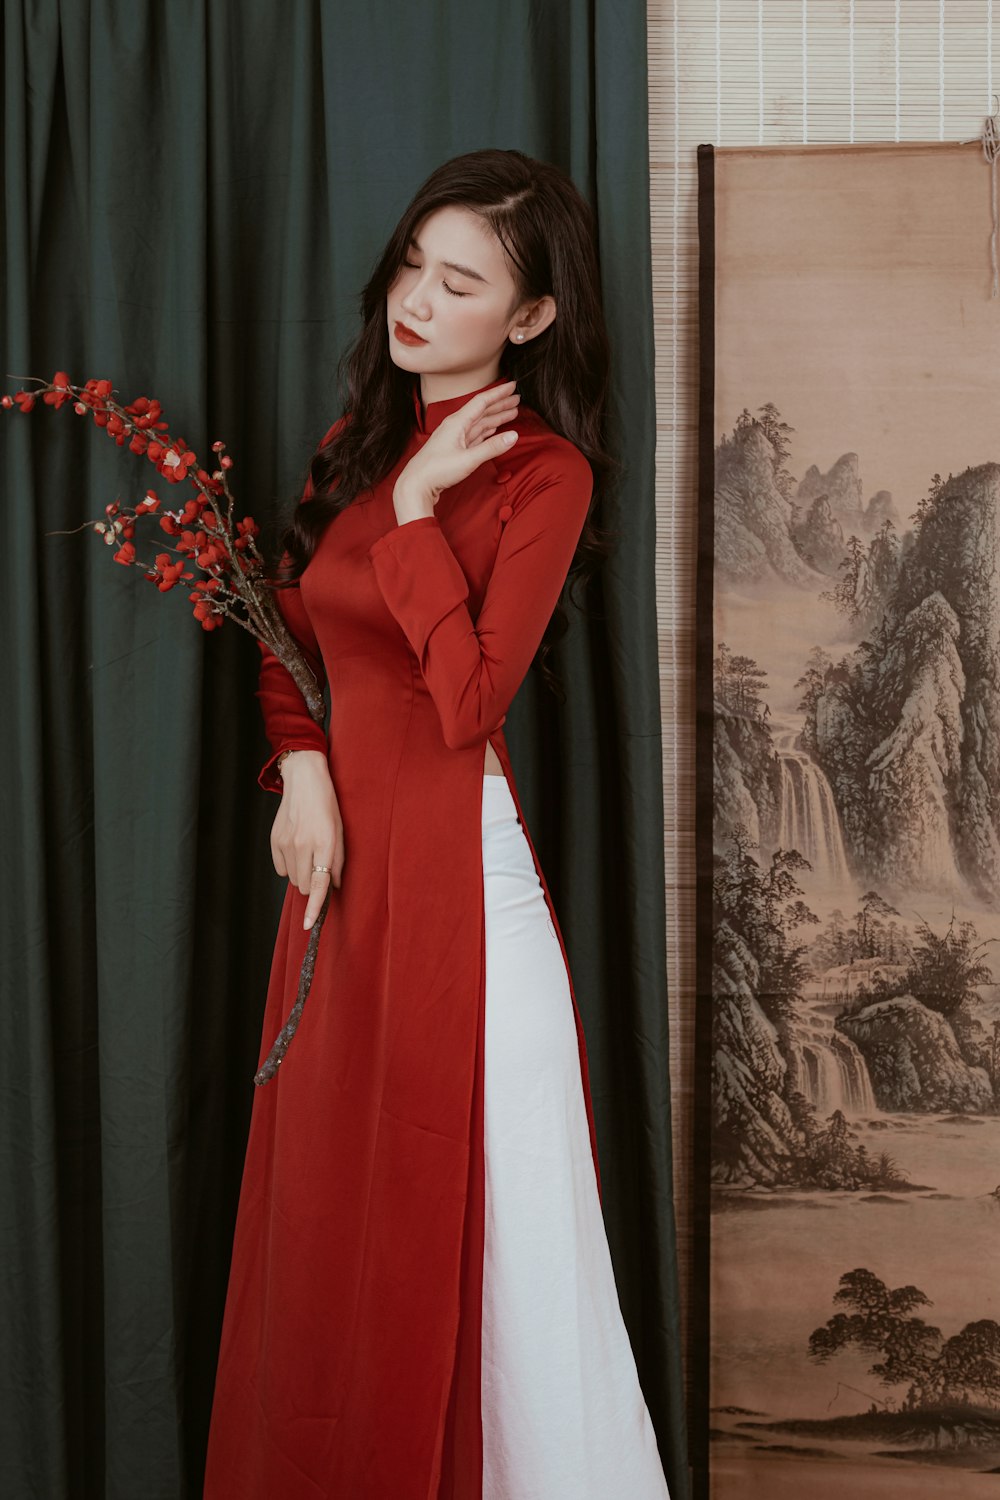 빨간 긴 코트와 하얀 드레스를 입은 여자